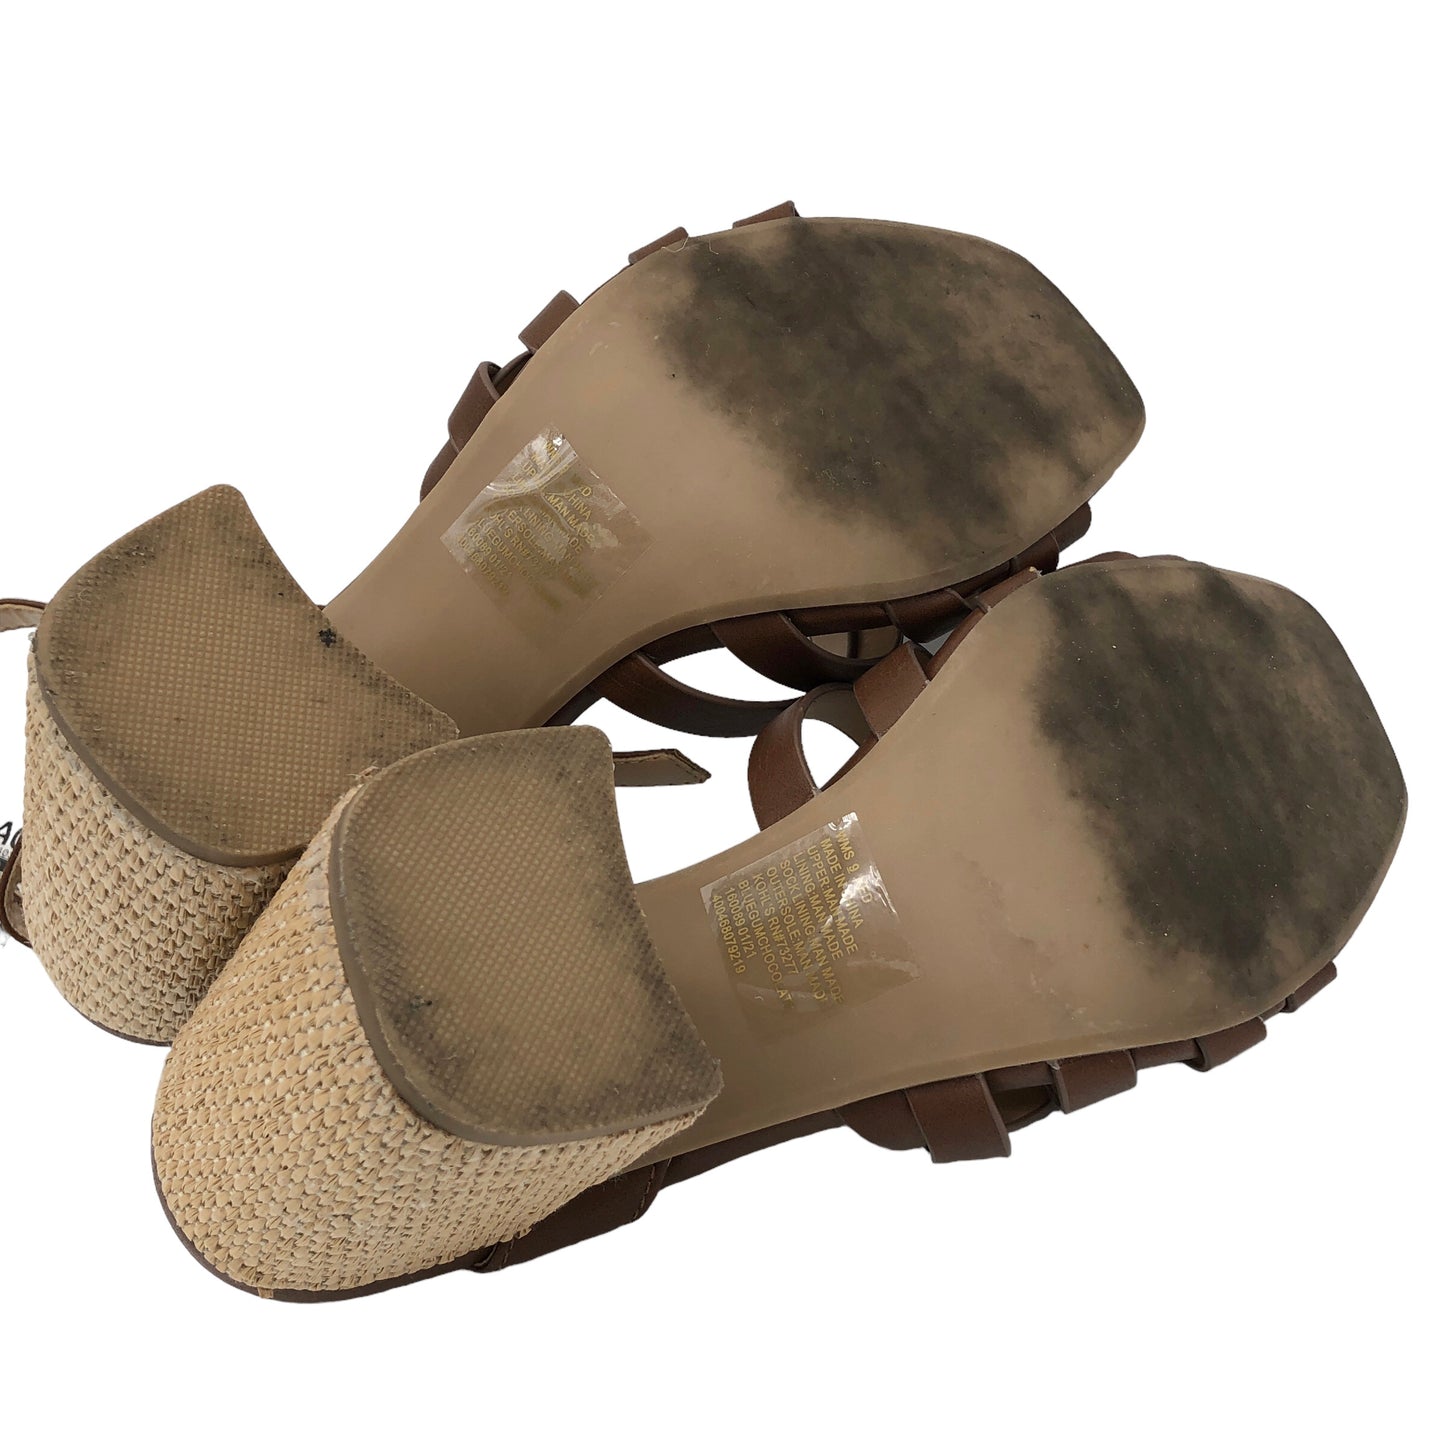 Sandals Heels Block By Lc Lauren Conrad  Size: 9